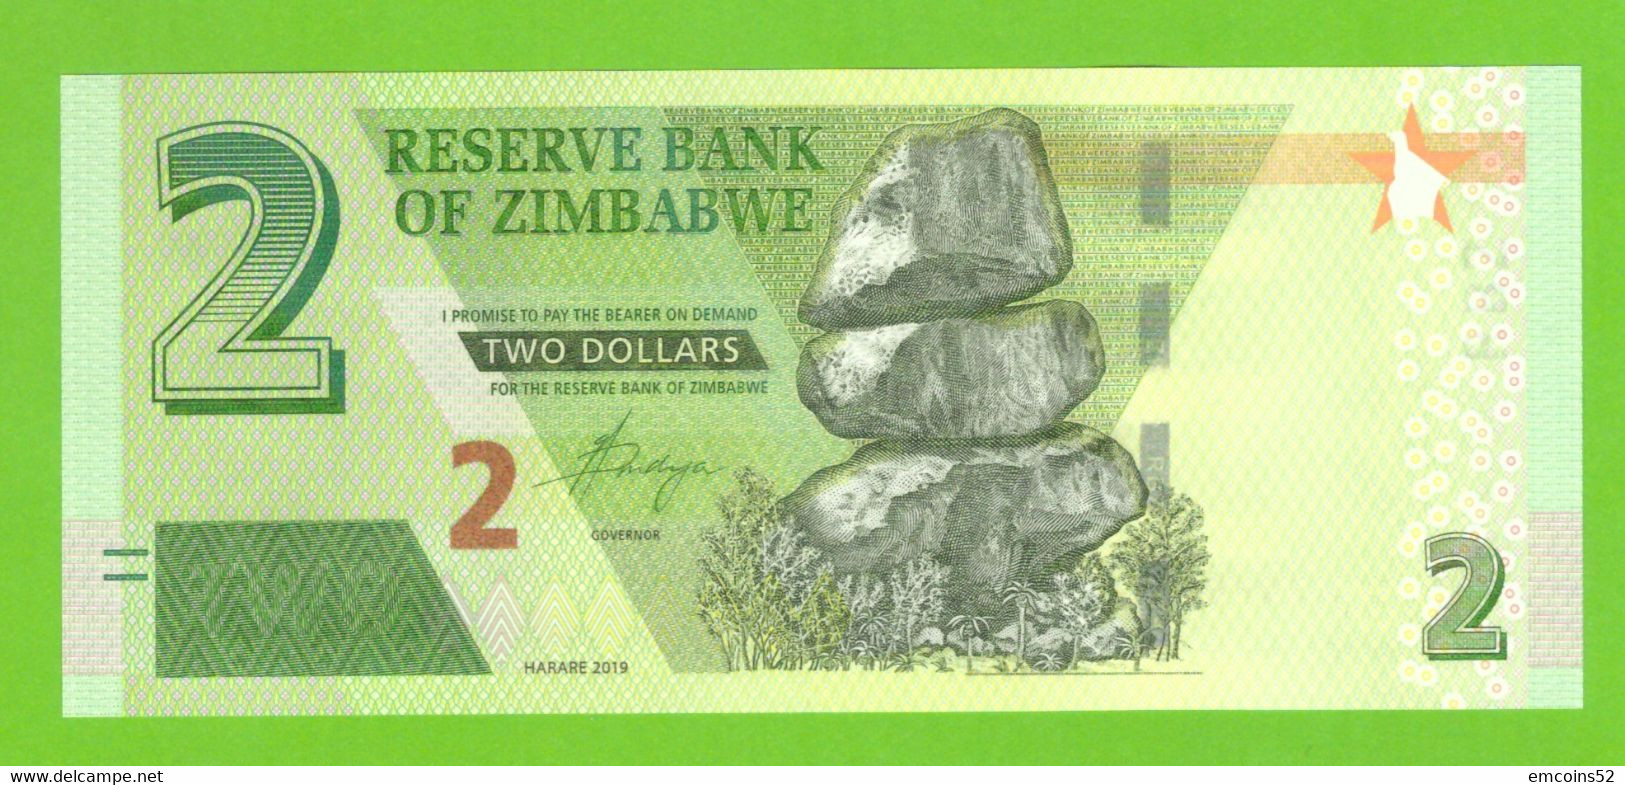 ZIMBABWE 2 DOLLARS 2019  P-W101 UNC - Zimbabwe